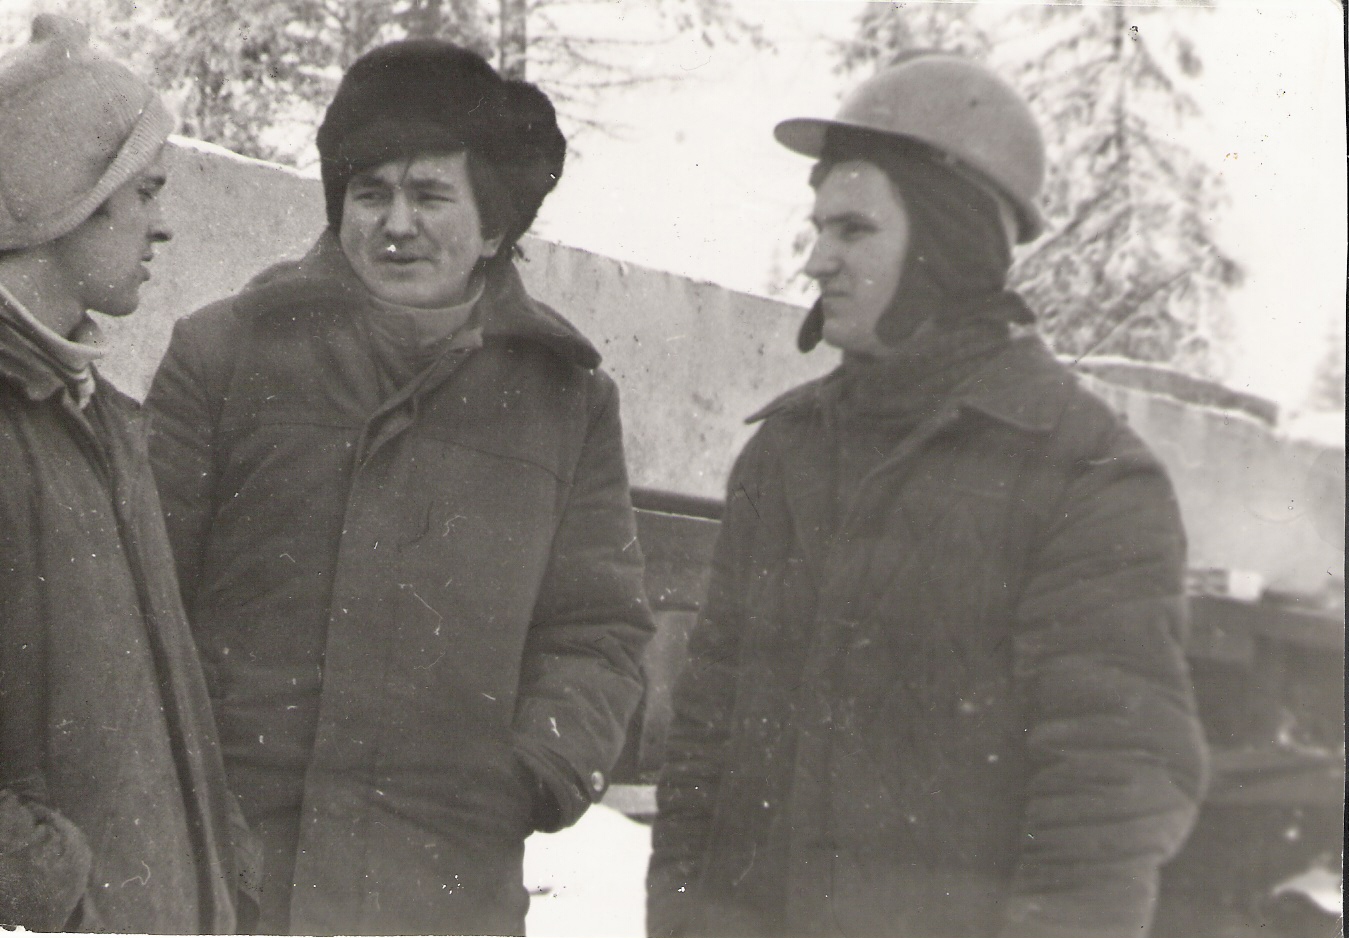 komsorg-askar-sharbakov-na-strojke-s-aktivistami-kolej-kutepovym-i-pashej-kubasovom-1984